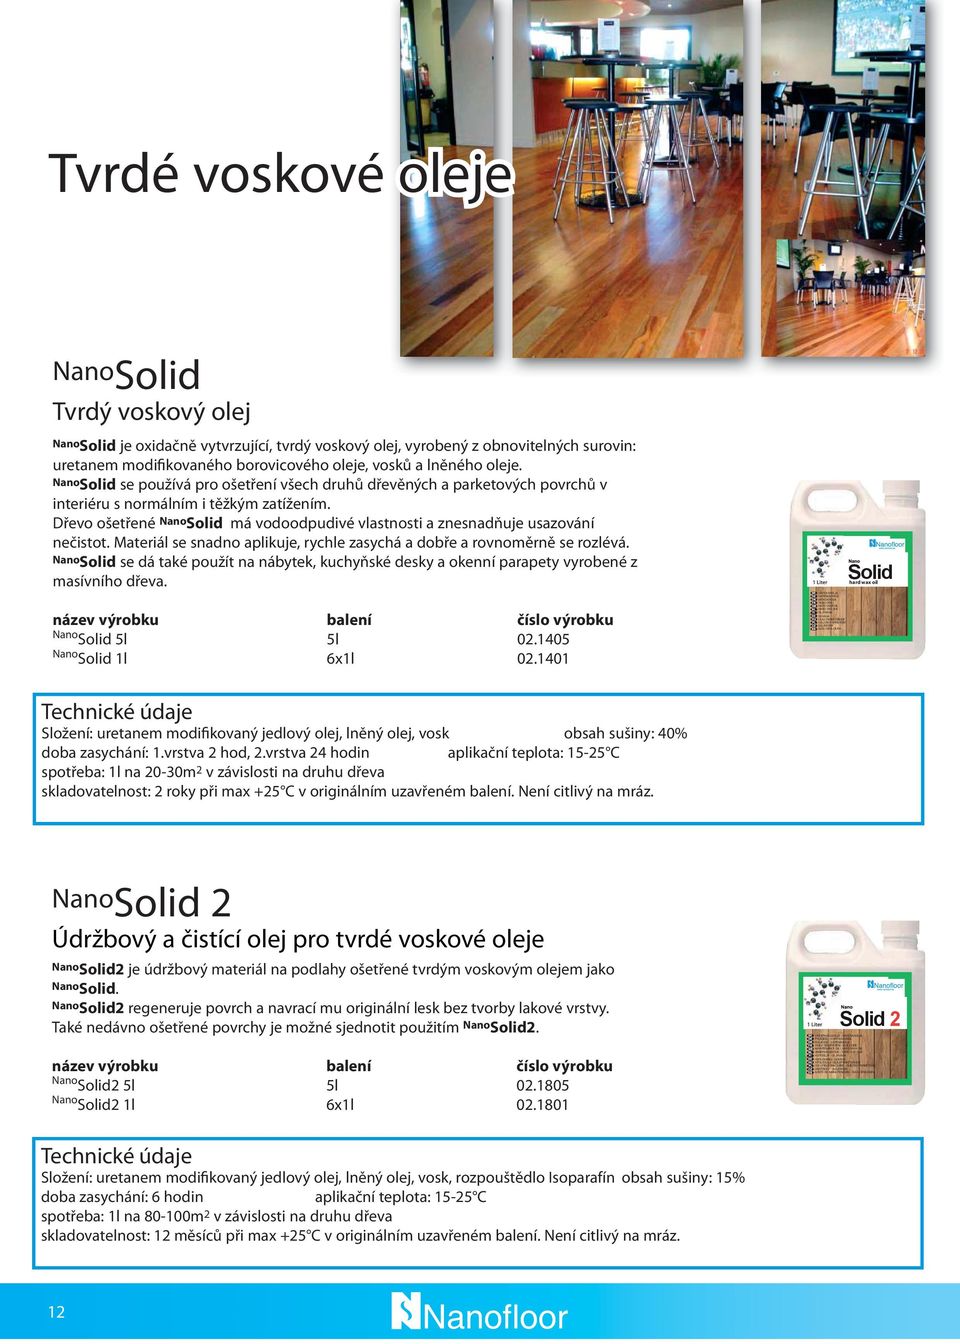 Solid se používá pro ošetření všech druhů dřevěných a parketových povrchů v interiéru s normálním i těžkým zatížením. Dřevo ošetřené Solid má vodoodpudivé vlastnosti a znesnadňuje usazování nečistot.